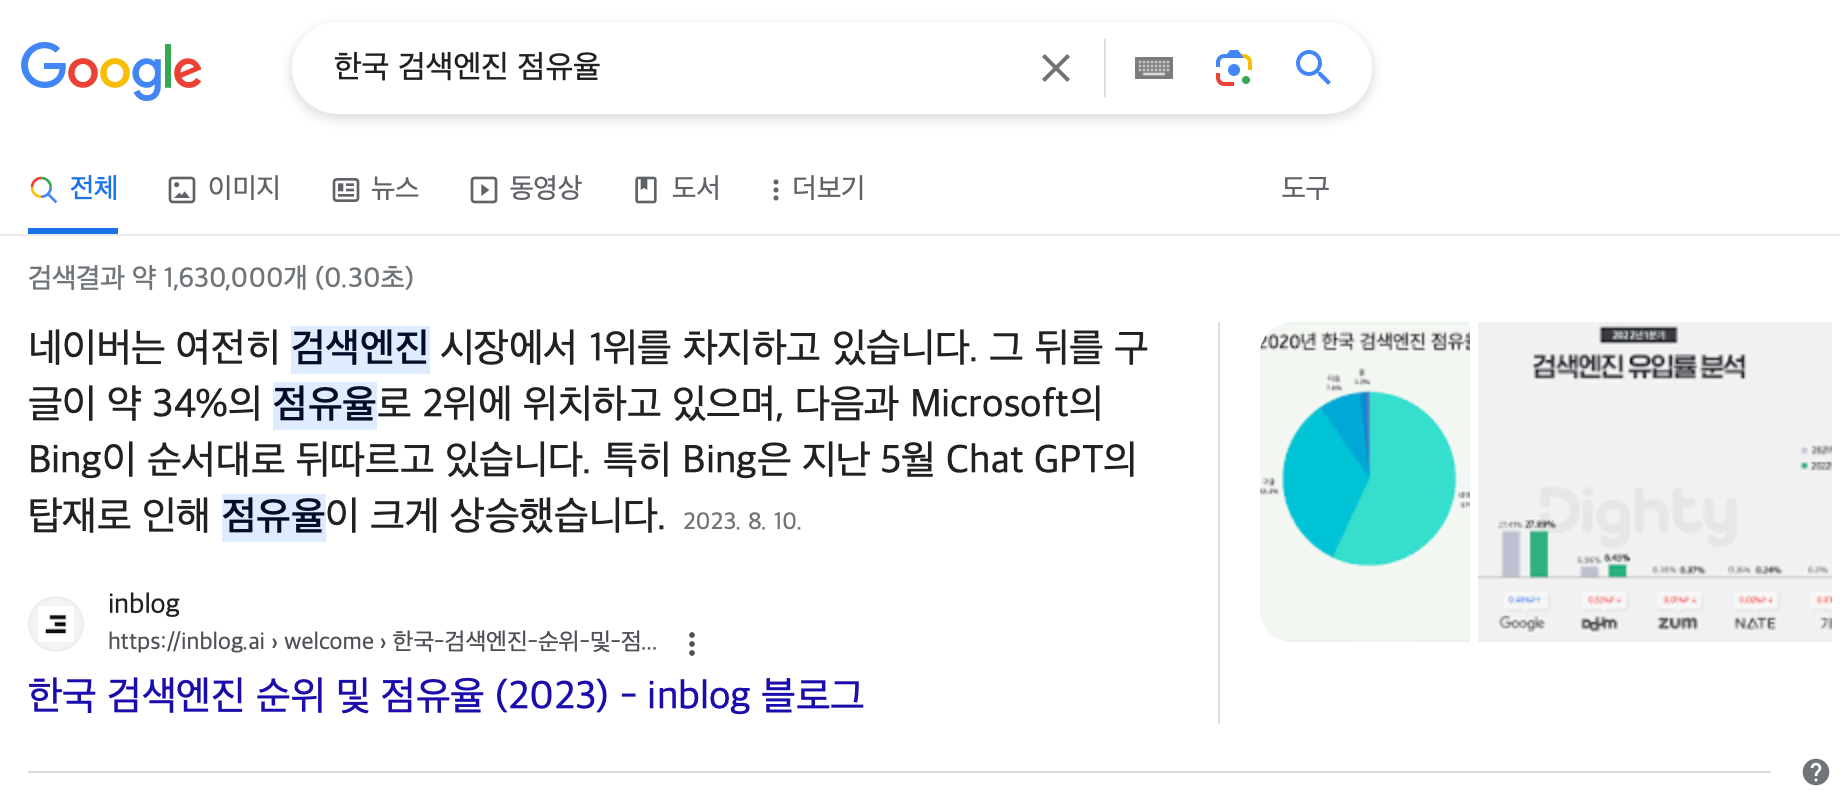 korea search engine share